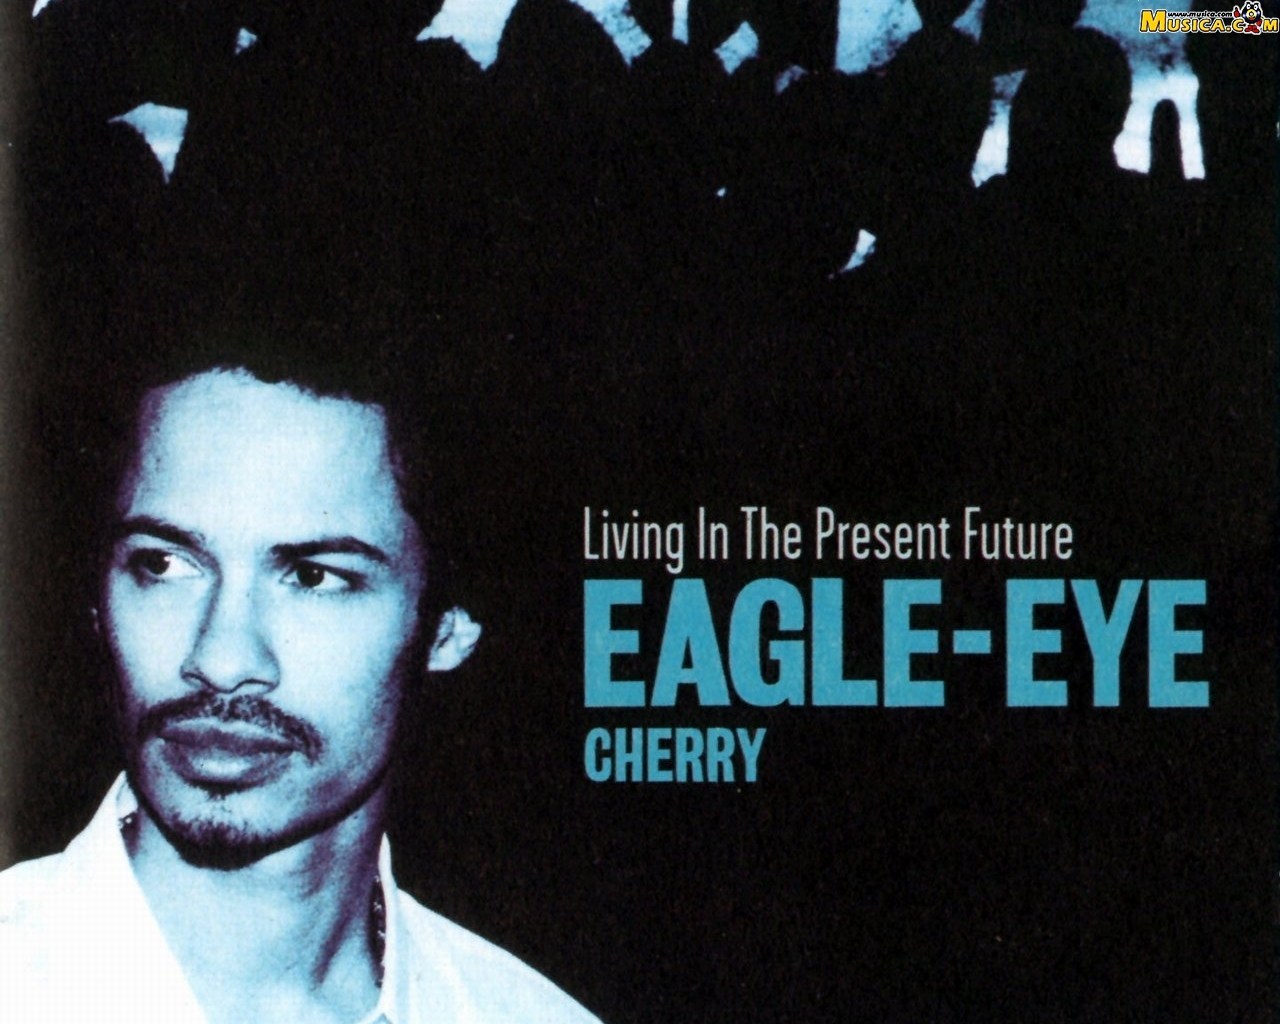 Fondo de pantalla de Eagle-Eye Cherry